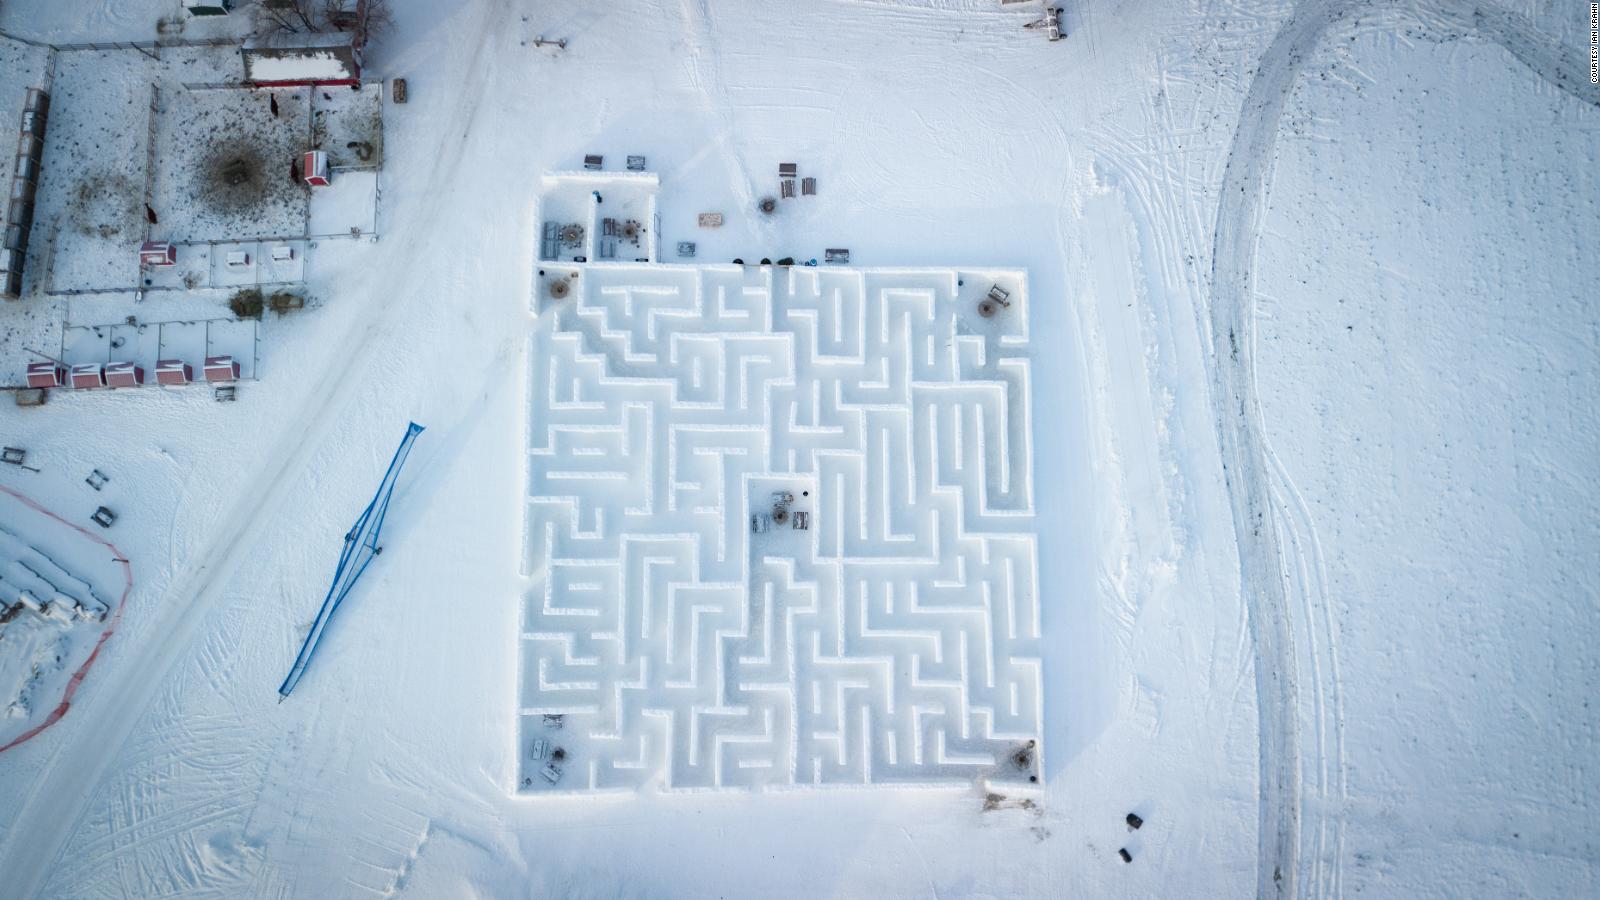 Una familia en Canadá construye el laberinto de nieve más grande del mundo  | Video | CNN